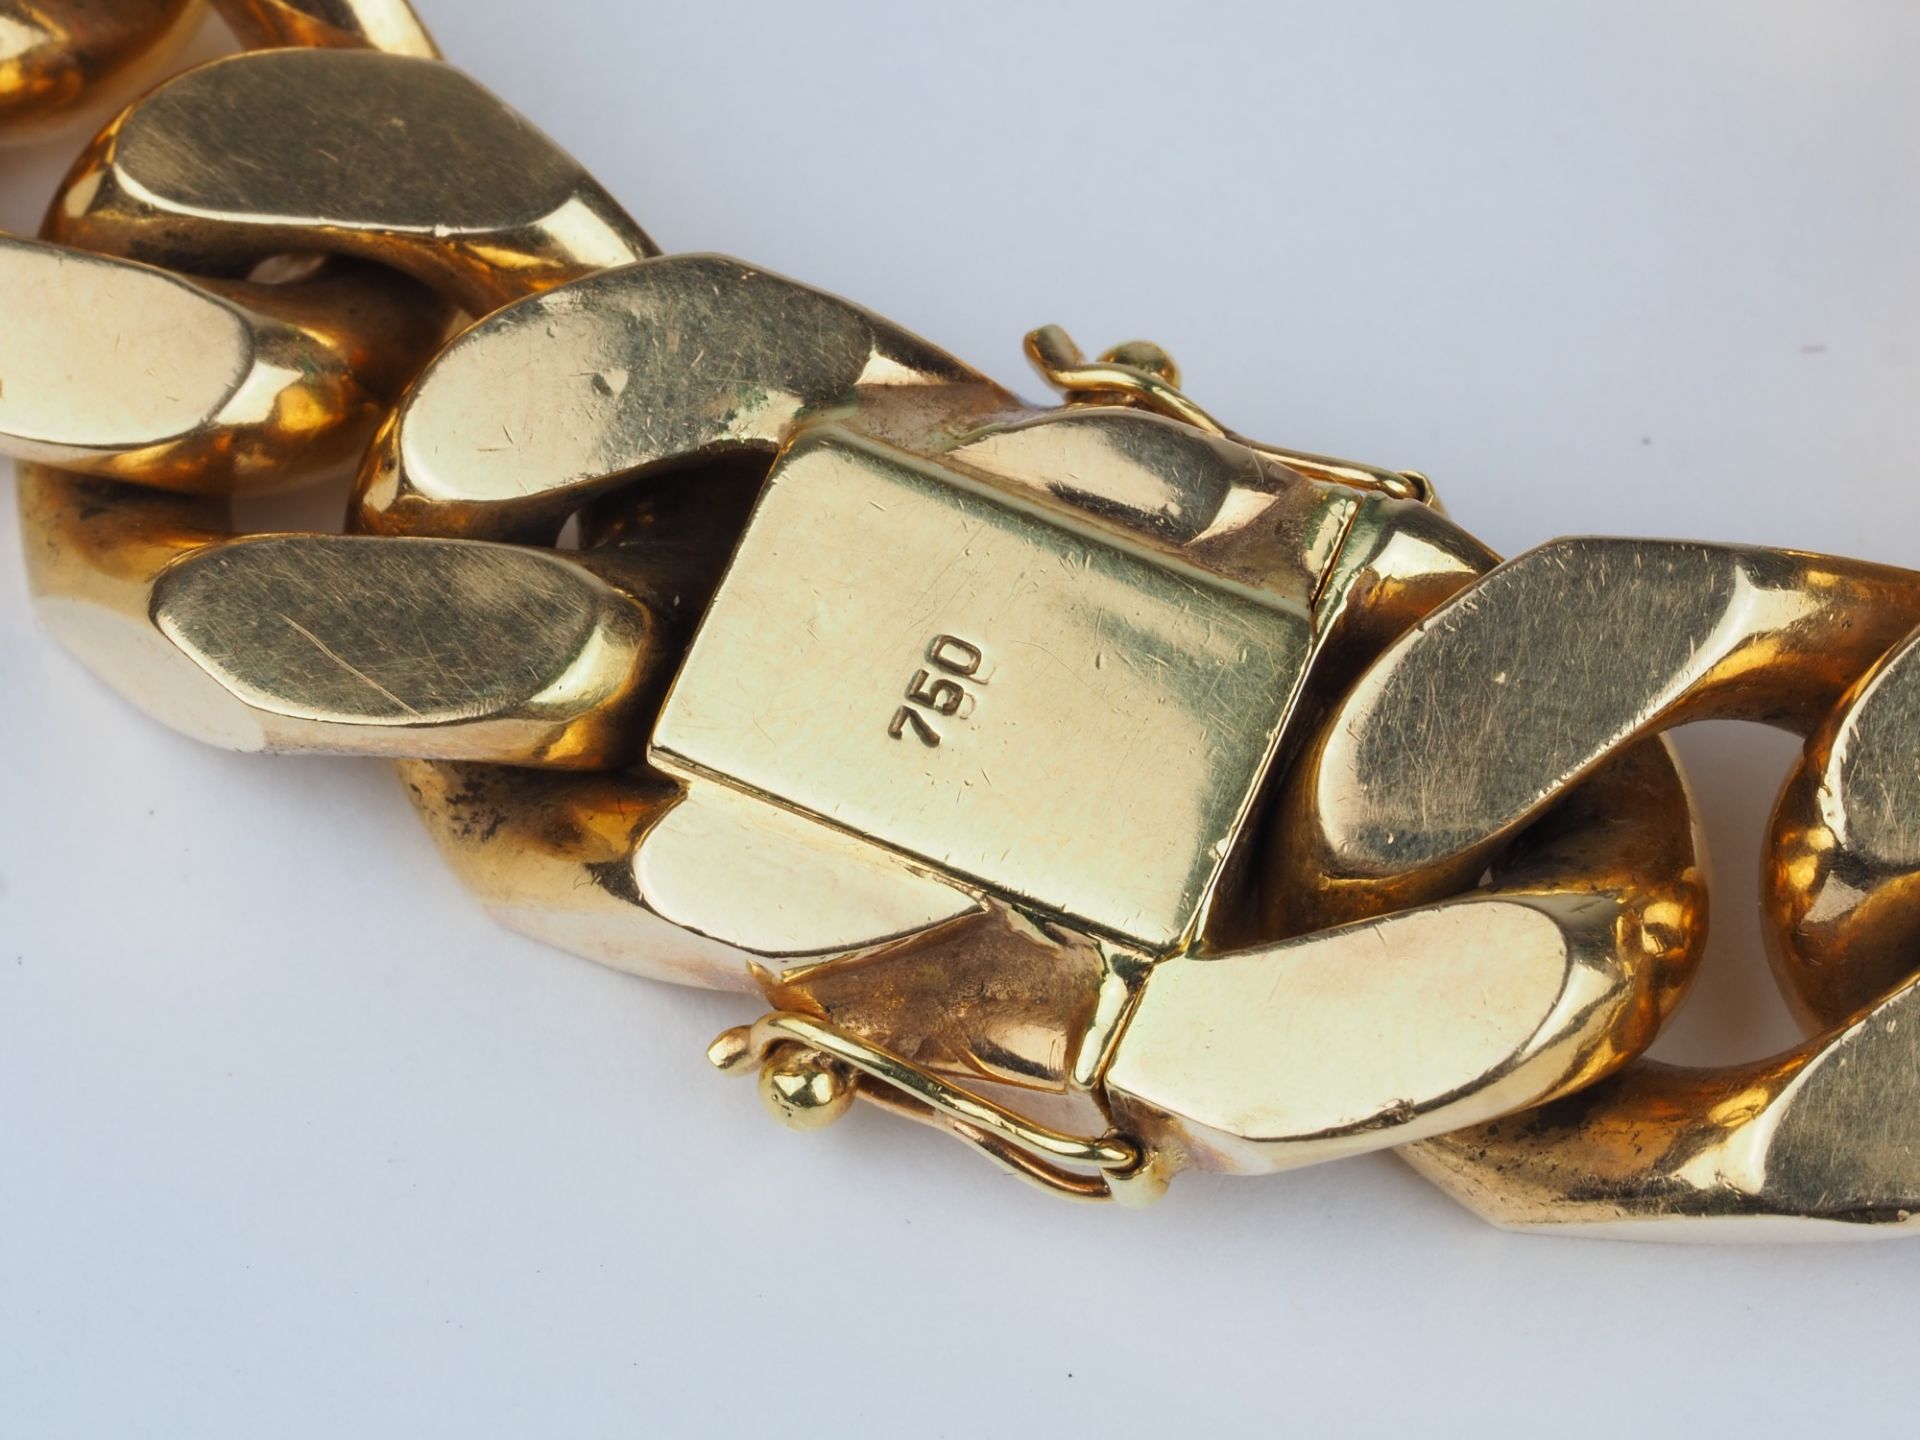 Massives 18kt Gold Armband, Panzerkette mit Monogrammfeld und Diamanten - Bild 3 aus 4